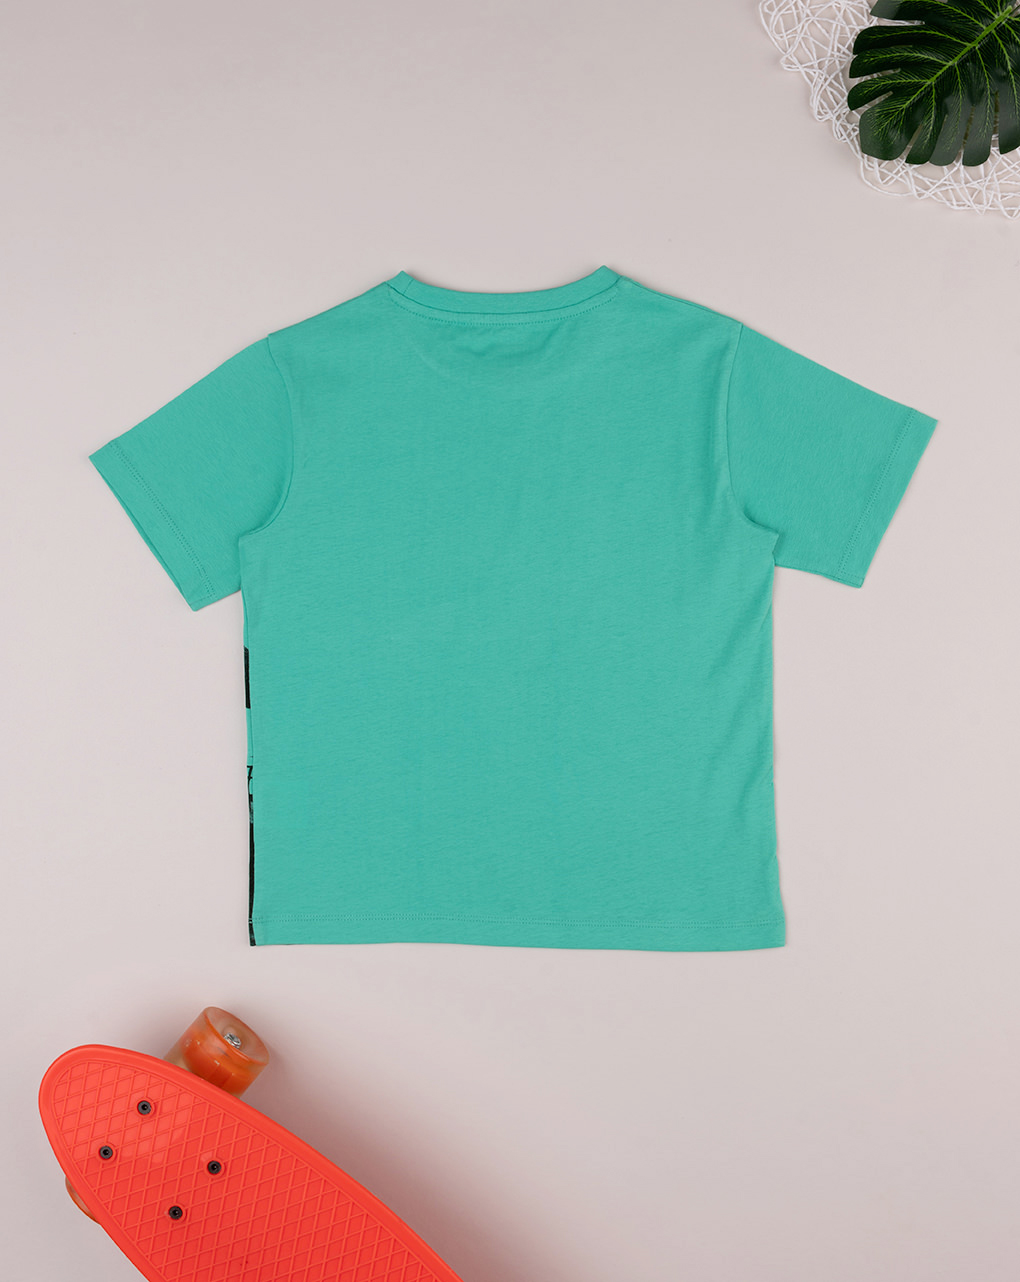 παιδικό t-shirt πράσινο με δεινόσαυρο για αγόρι - Prénatal